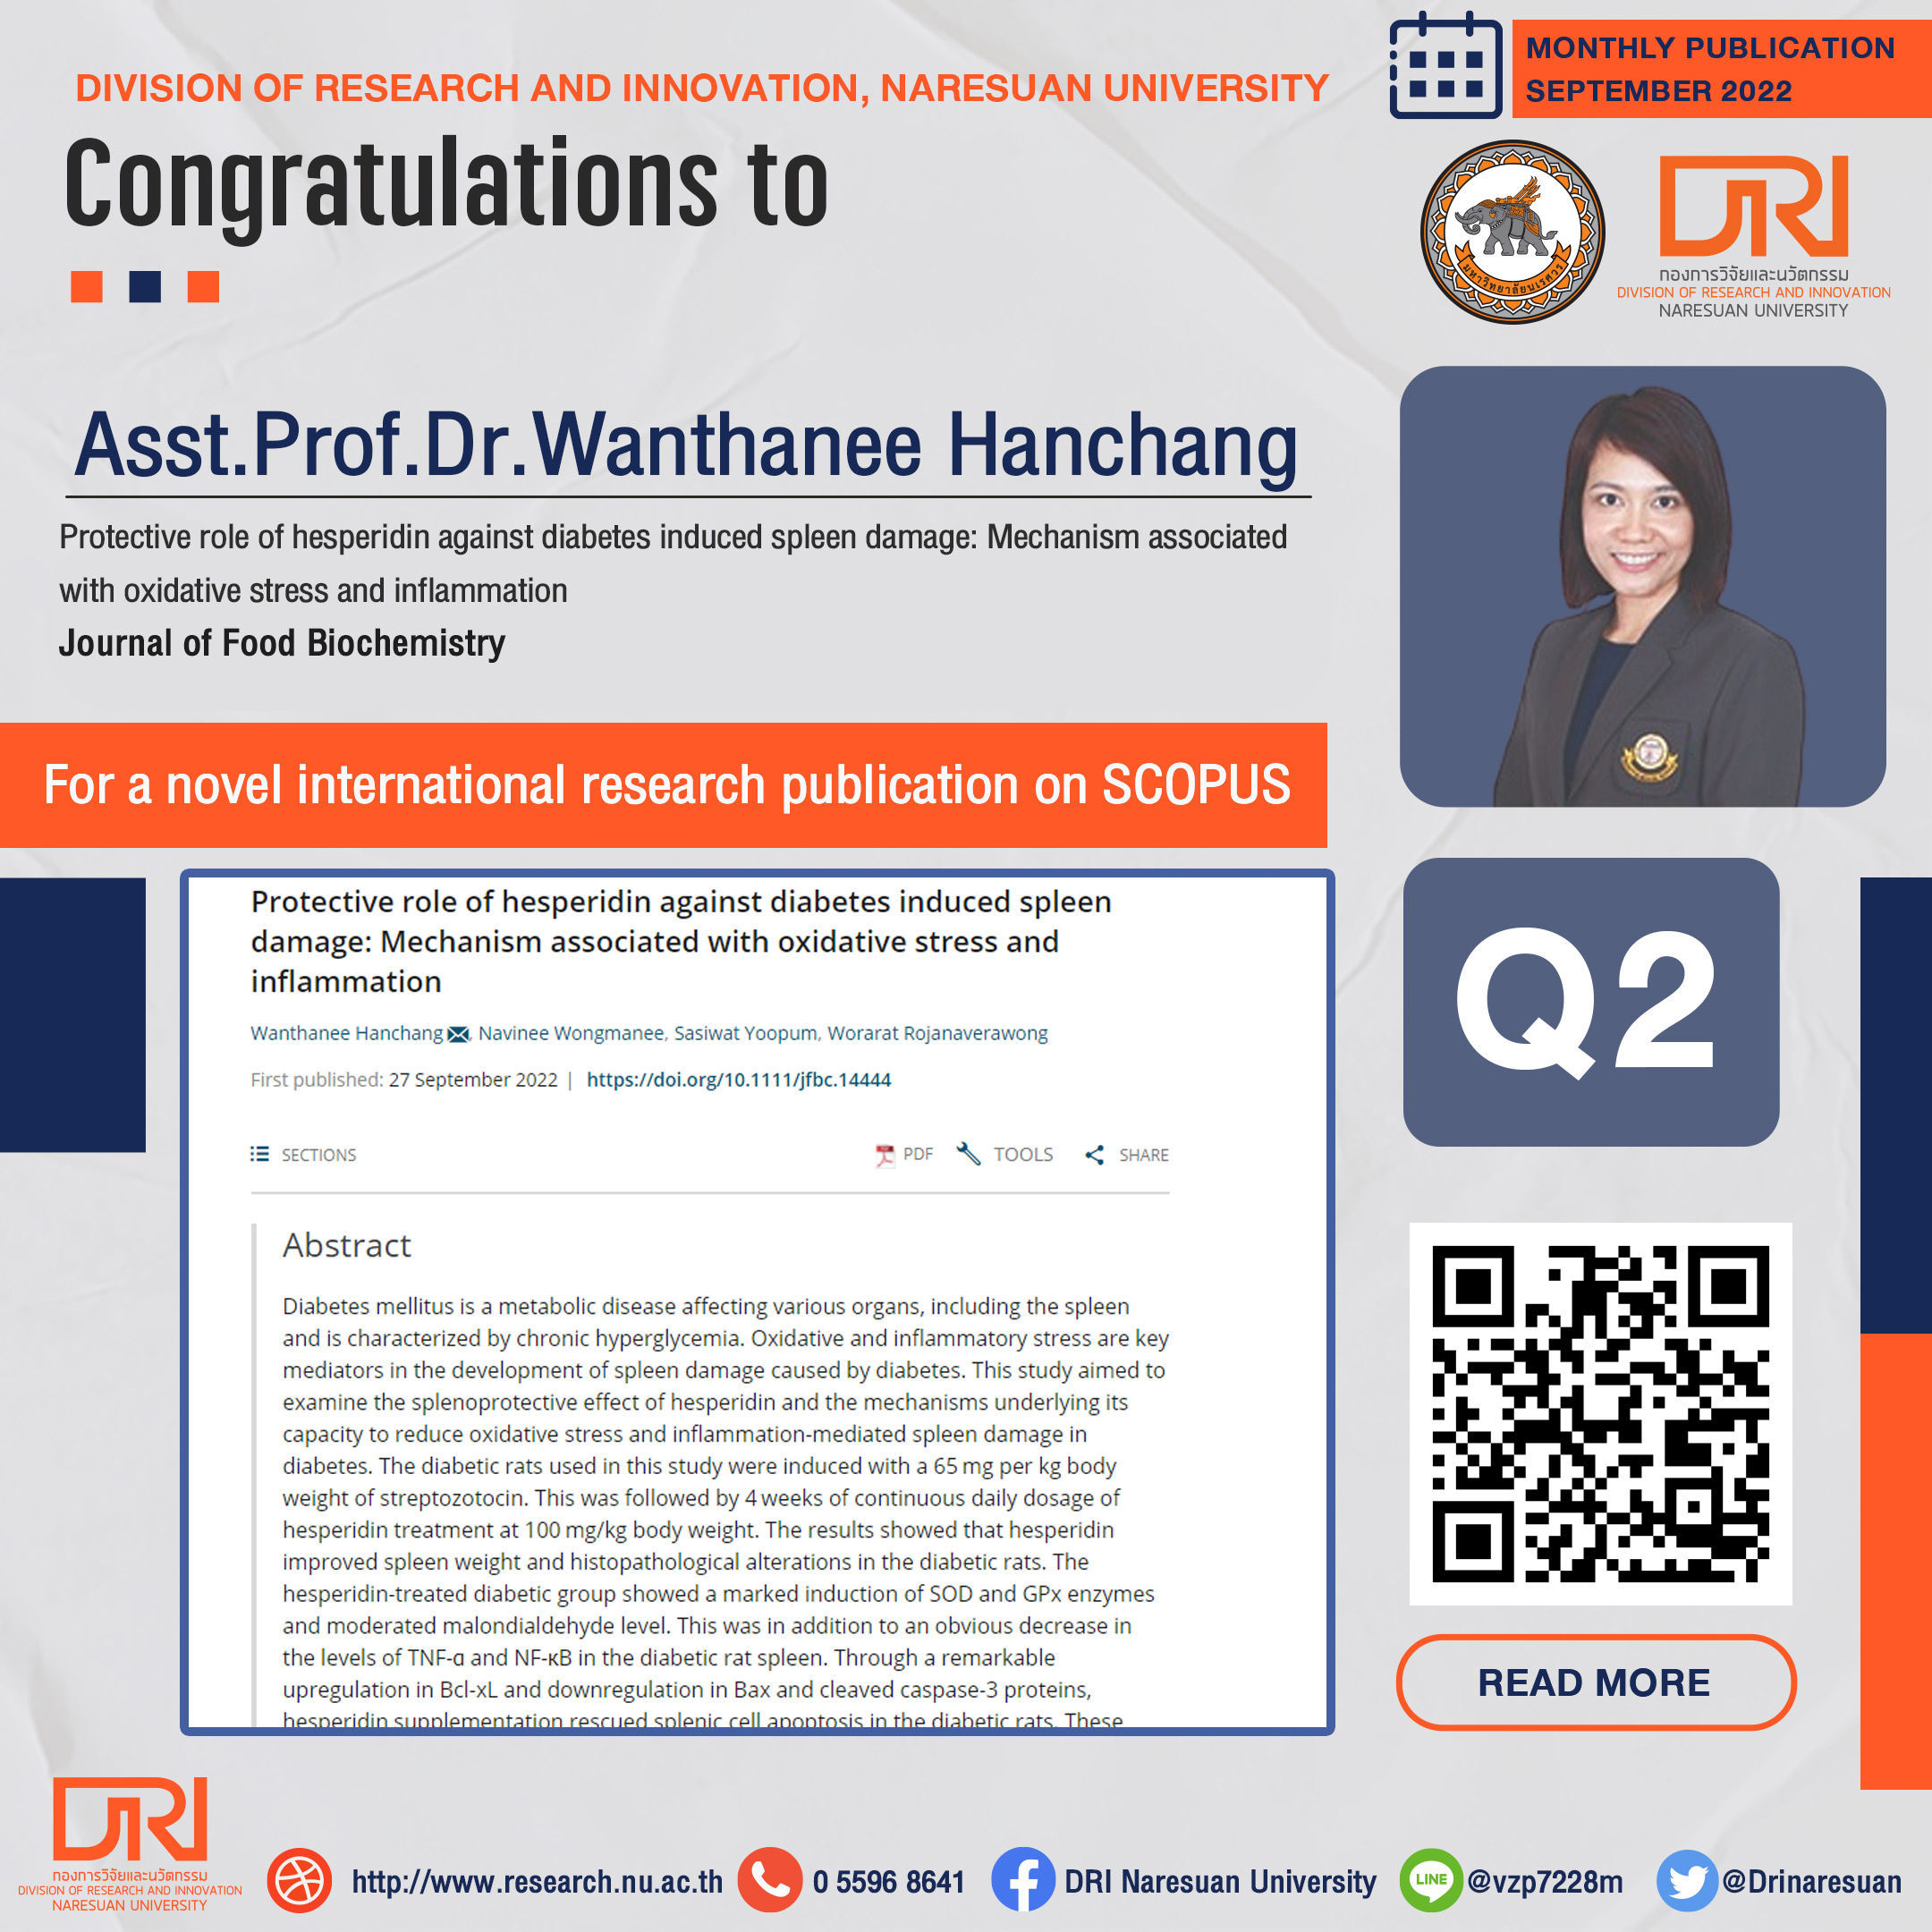 Congratulations to Asst.Prof.Dr.Wanthanee Hanchang